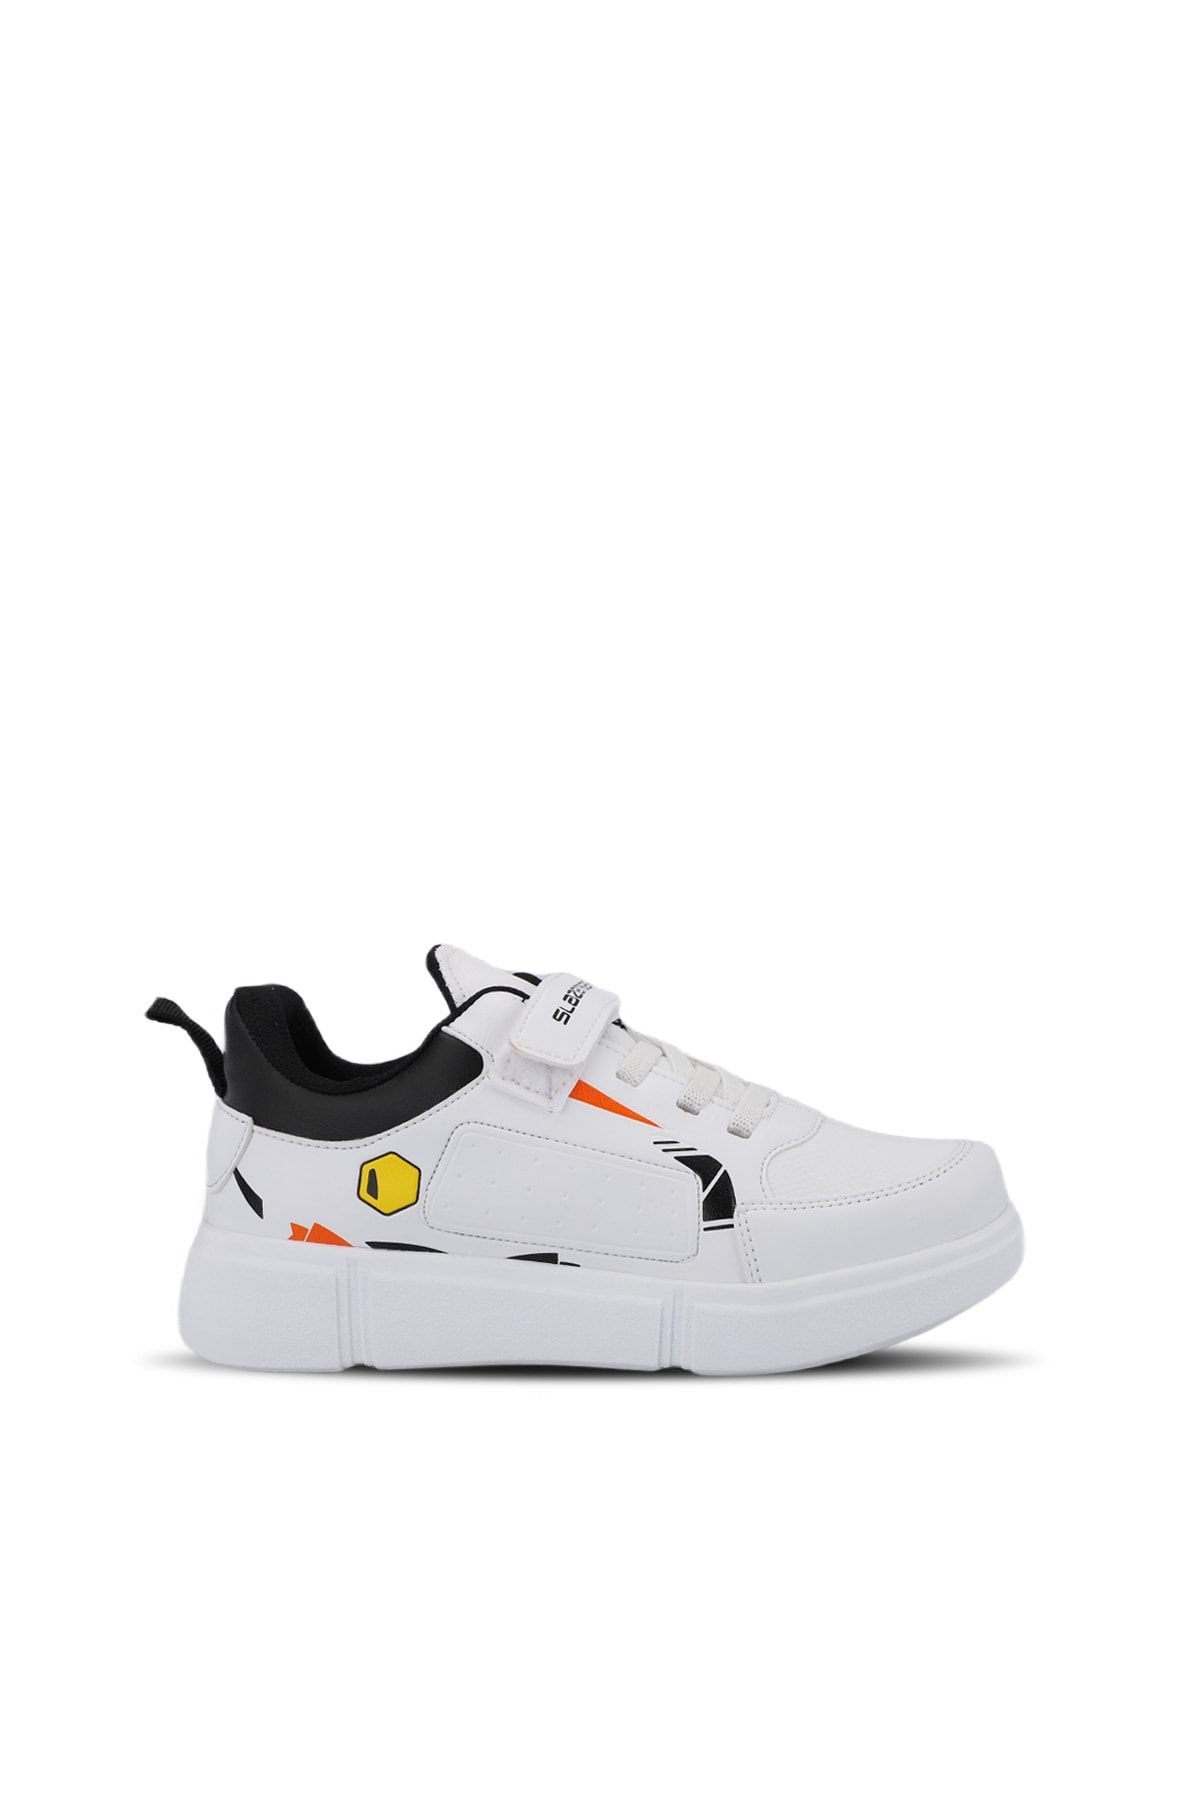 Slazenger KEPA Sneaker Ayakkabı Beyaz / Siyah